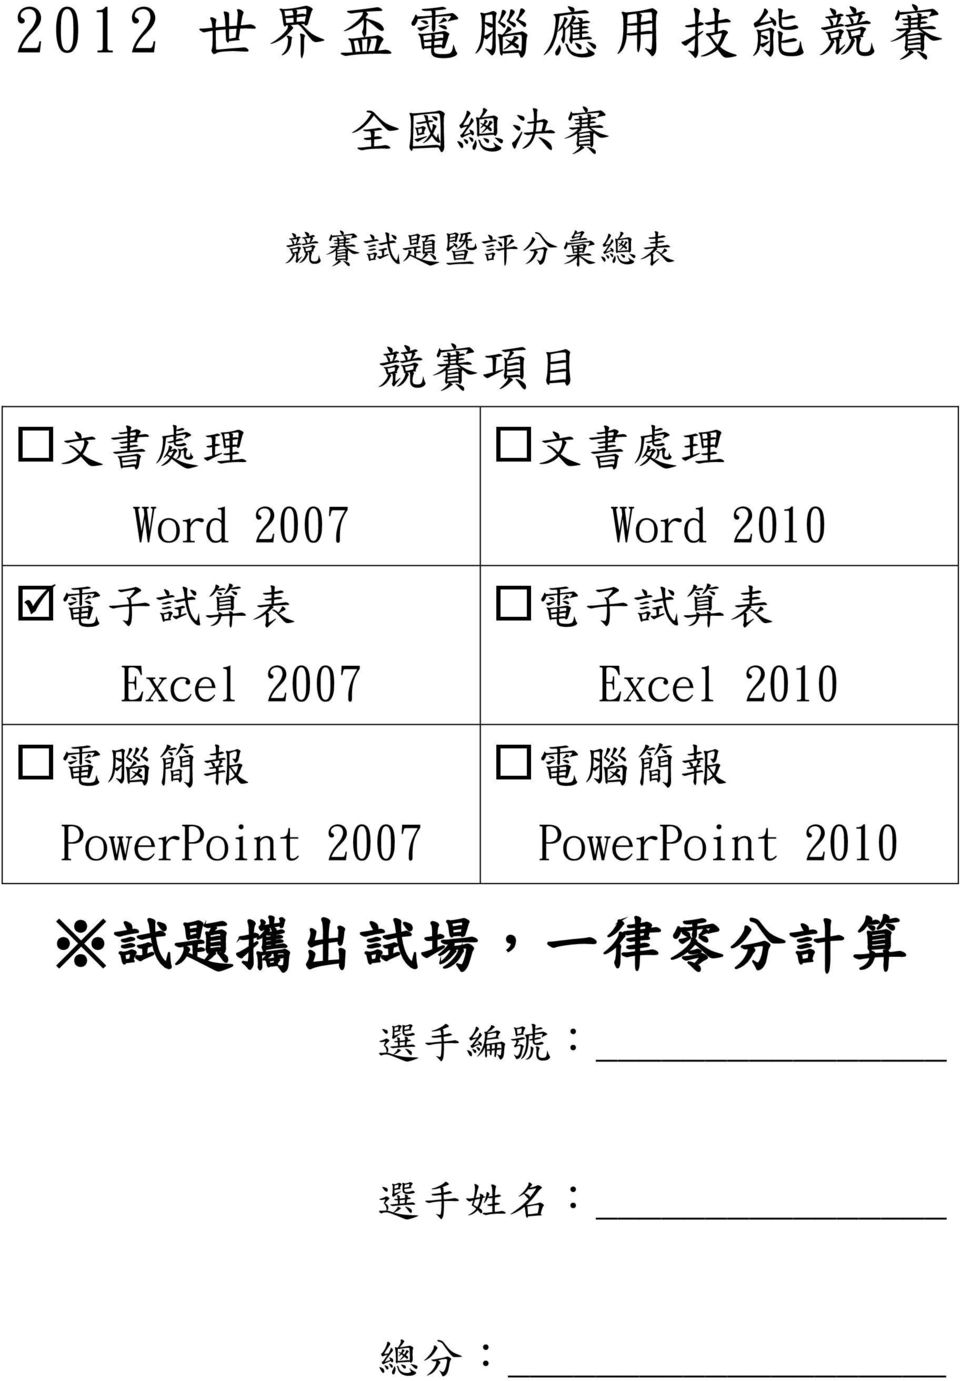 試 算 表 Excel 2007 電 腦 簡 報 電 腦 簡 報 PowerPoint 2007